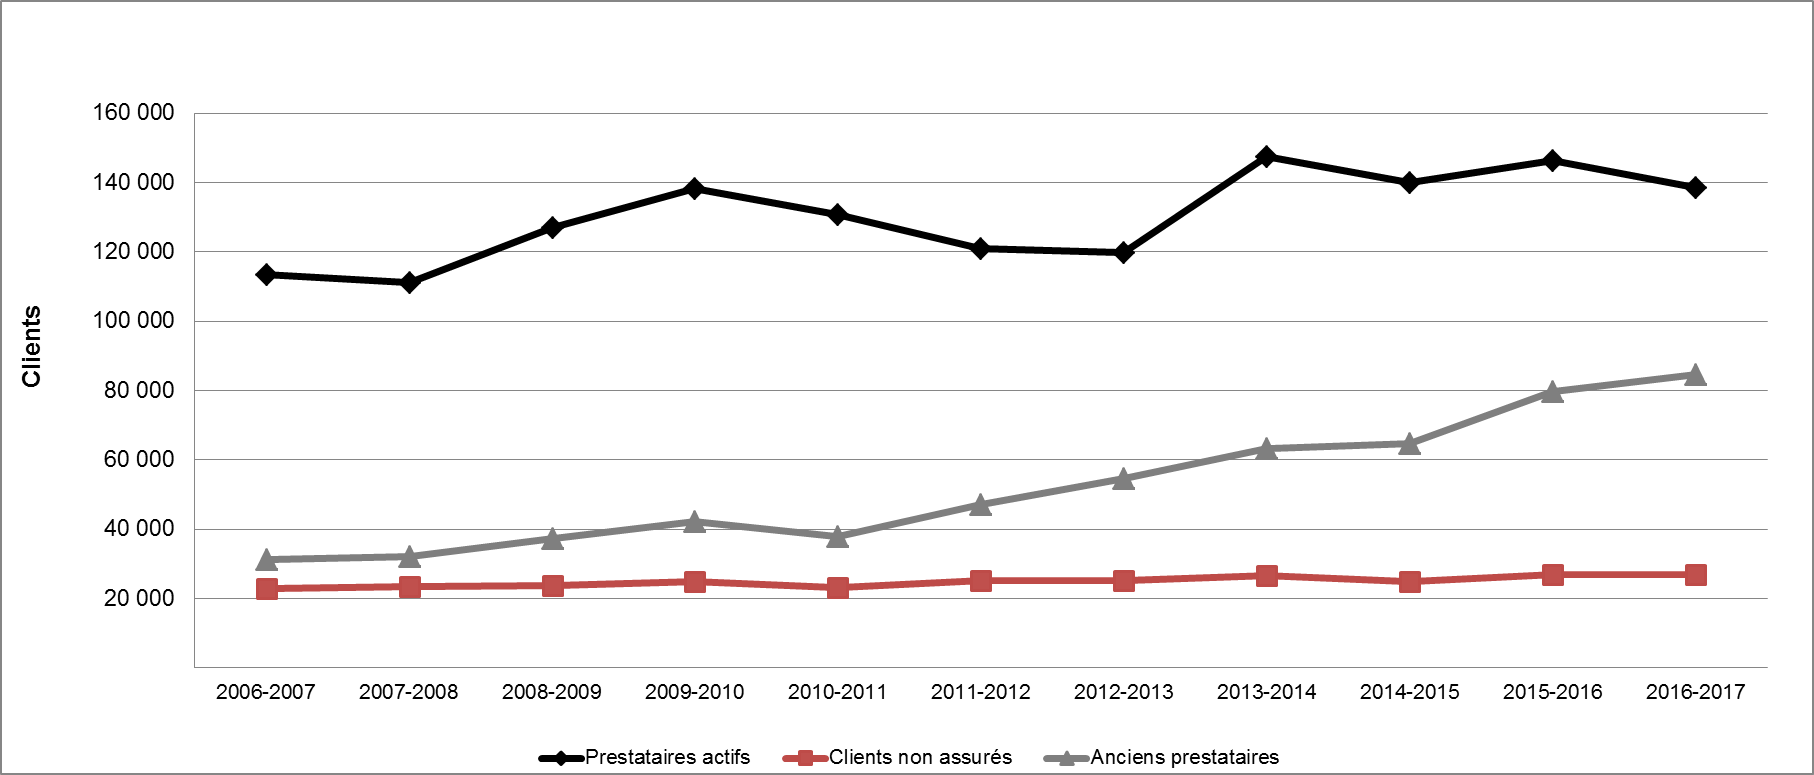 Graphique 19 - Répartition des clients selon le type (2006-2007 à 2016-2017)